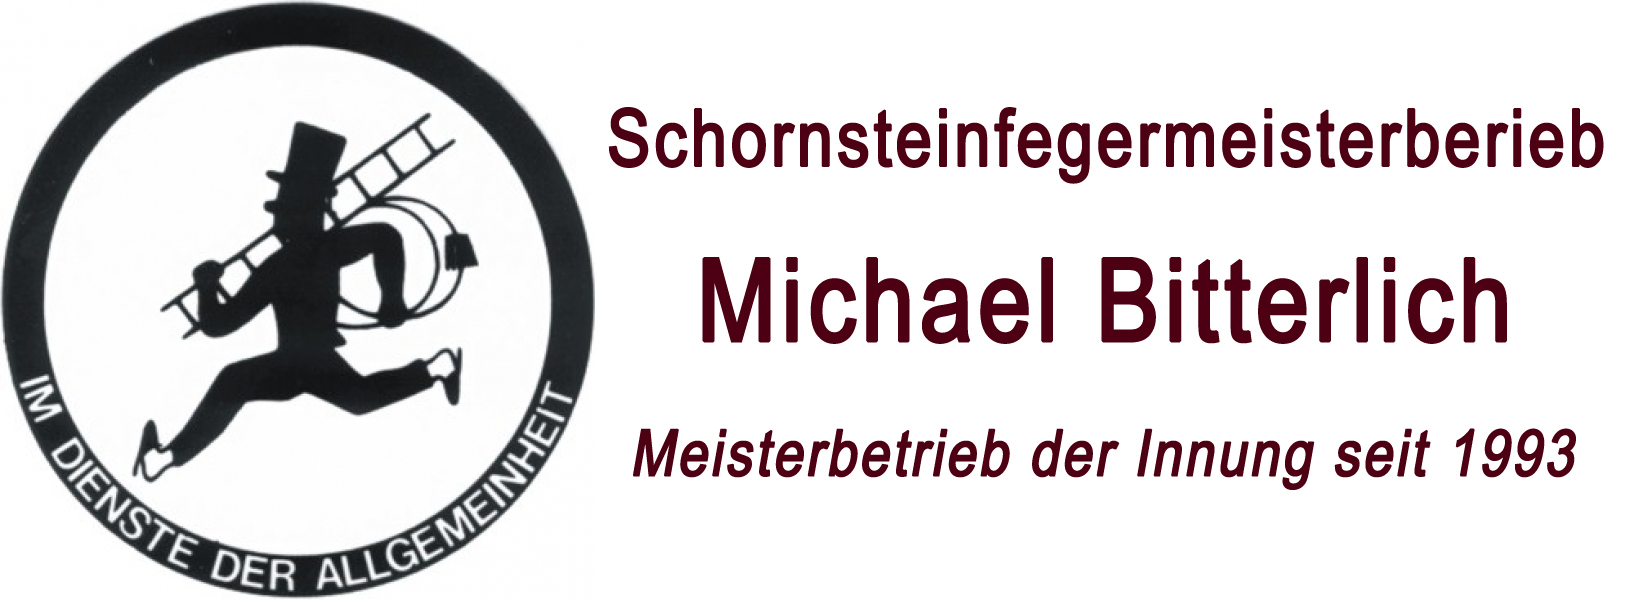 Schornsteinfegermeisterbetrieb Michael Bitterlich